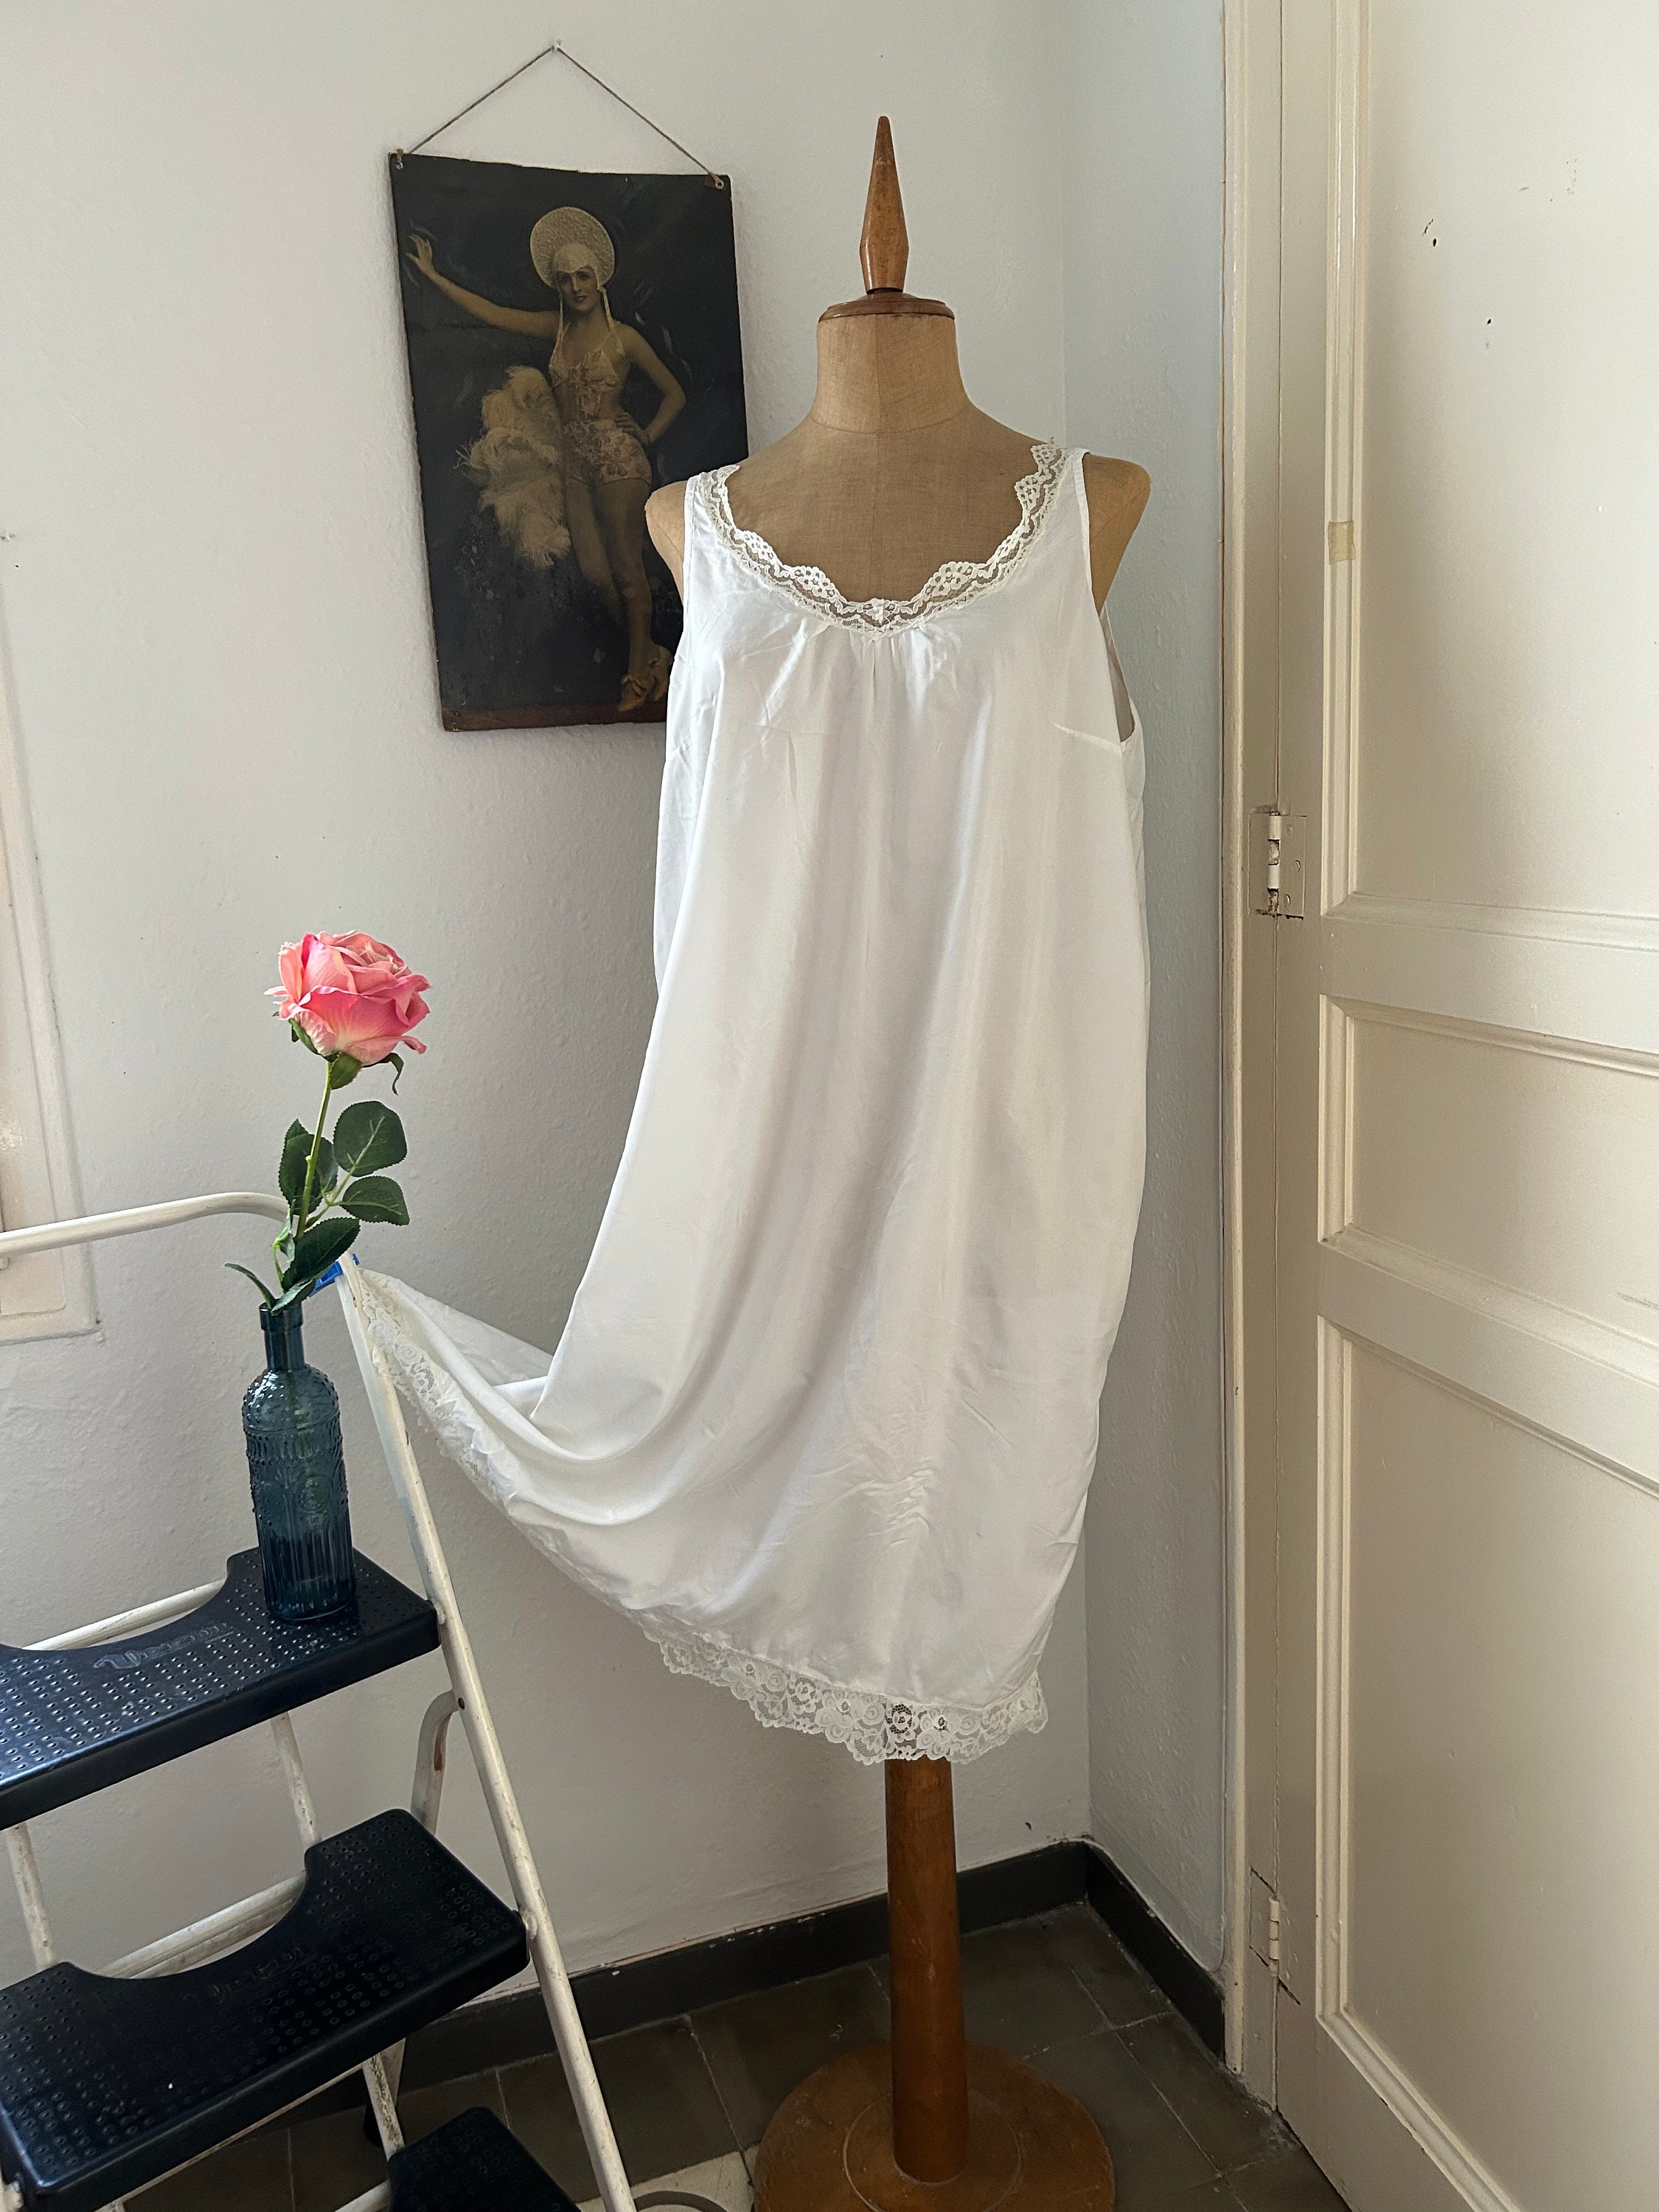 Victorian Nightdress, Vintage Camisole Underwear, Satin Nightie, Lace  Nightgown, Cottagecore Night Gown Sleepwear Camise Nighty, White Rose 